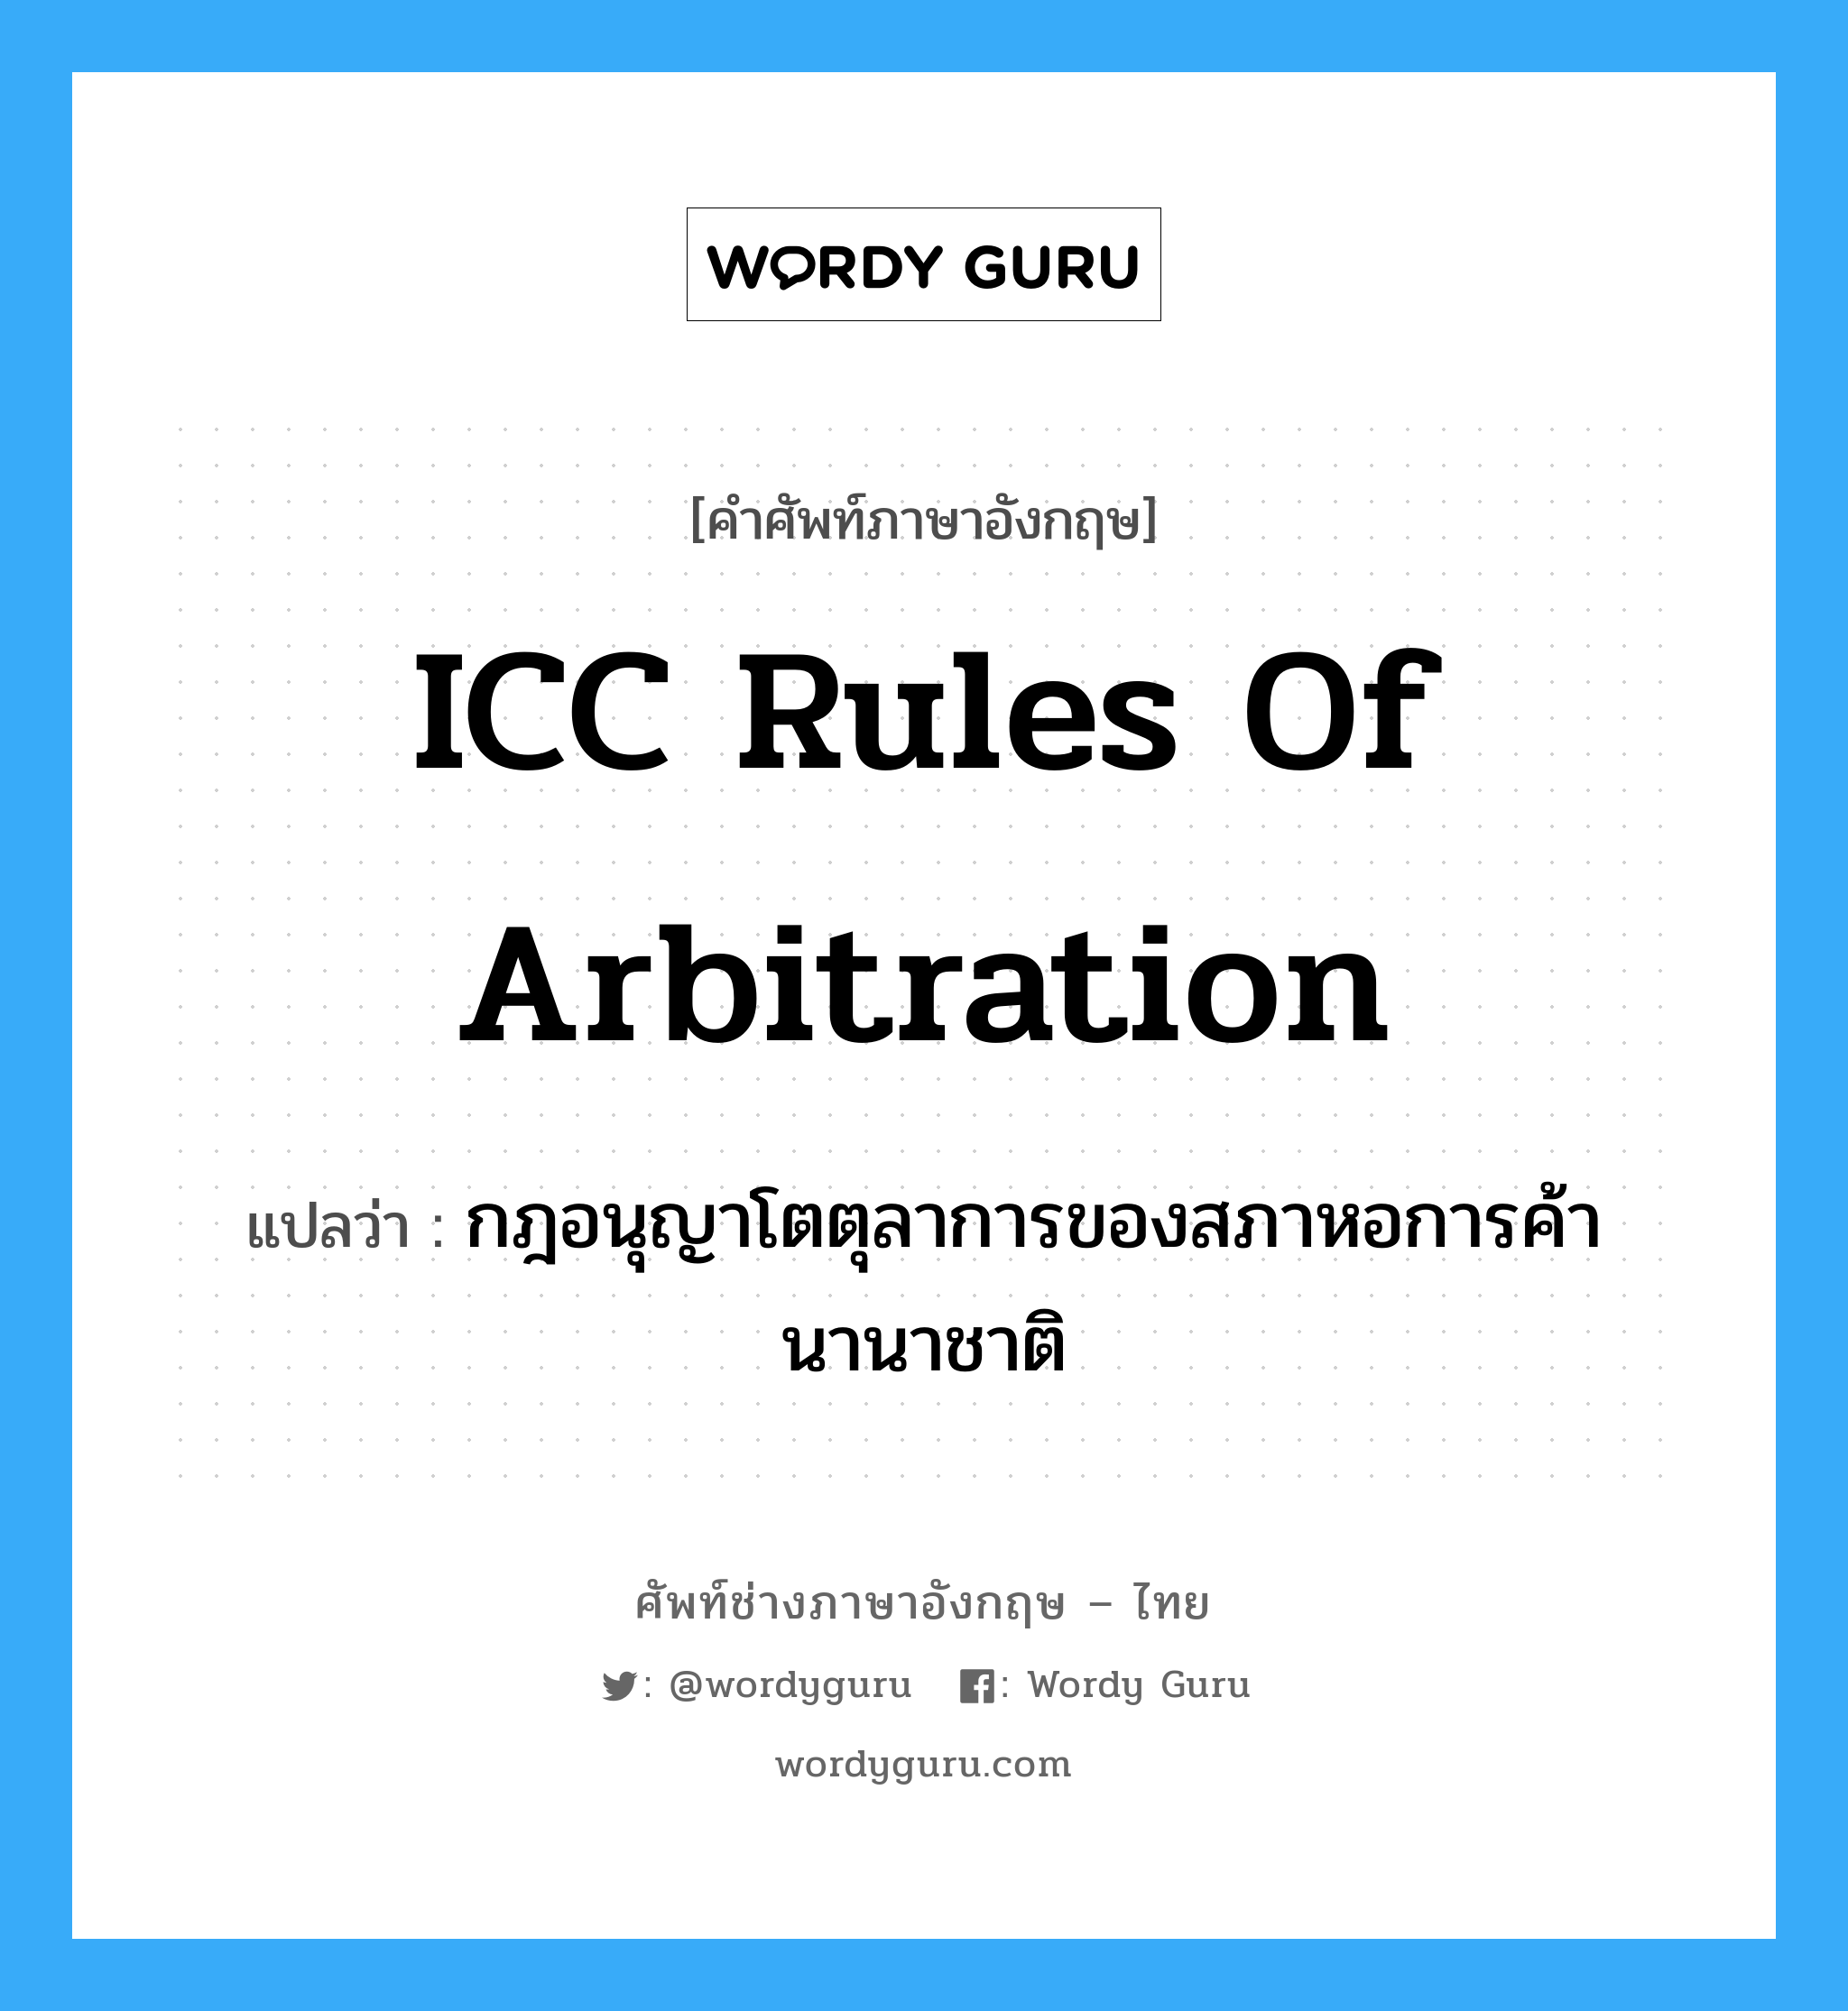 กฎอนุญาโตตุลาการของสภาหอการค้านานาชาติ ภาษาอังกฤษ?, คำศัพท์ช่างภาษาอังกฤษ - ไทย กฎอนุญาโตตุลาการของสภาหอการค้านานาชาติ คำศัพท์ภาษาอังกฤษ กฎอนุญาโตตุลาการของสภาหอการค้านานาชาติ แปลว่า ICC Rules of Arbitration